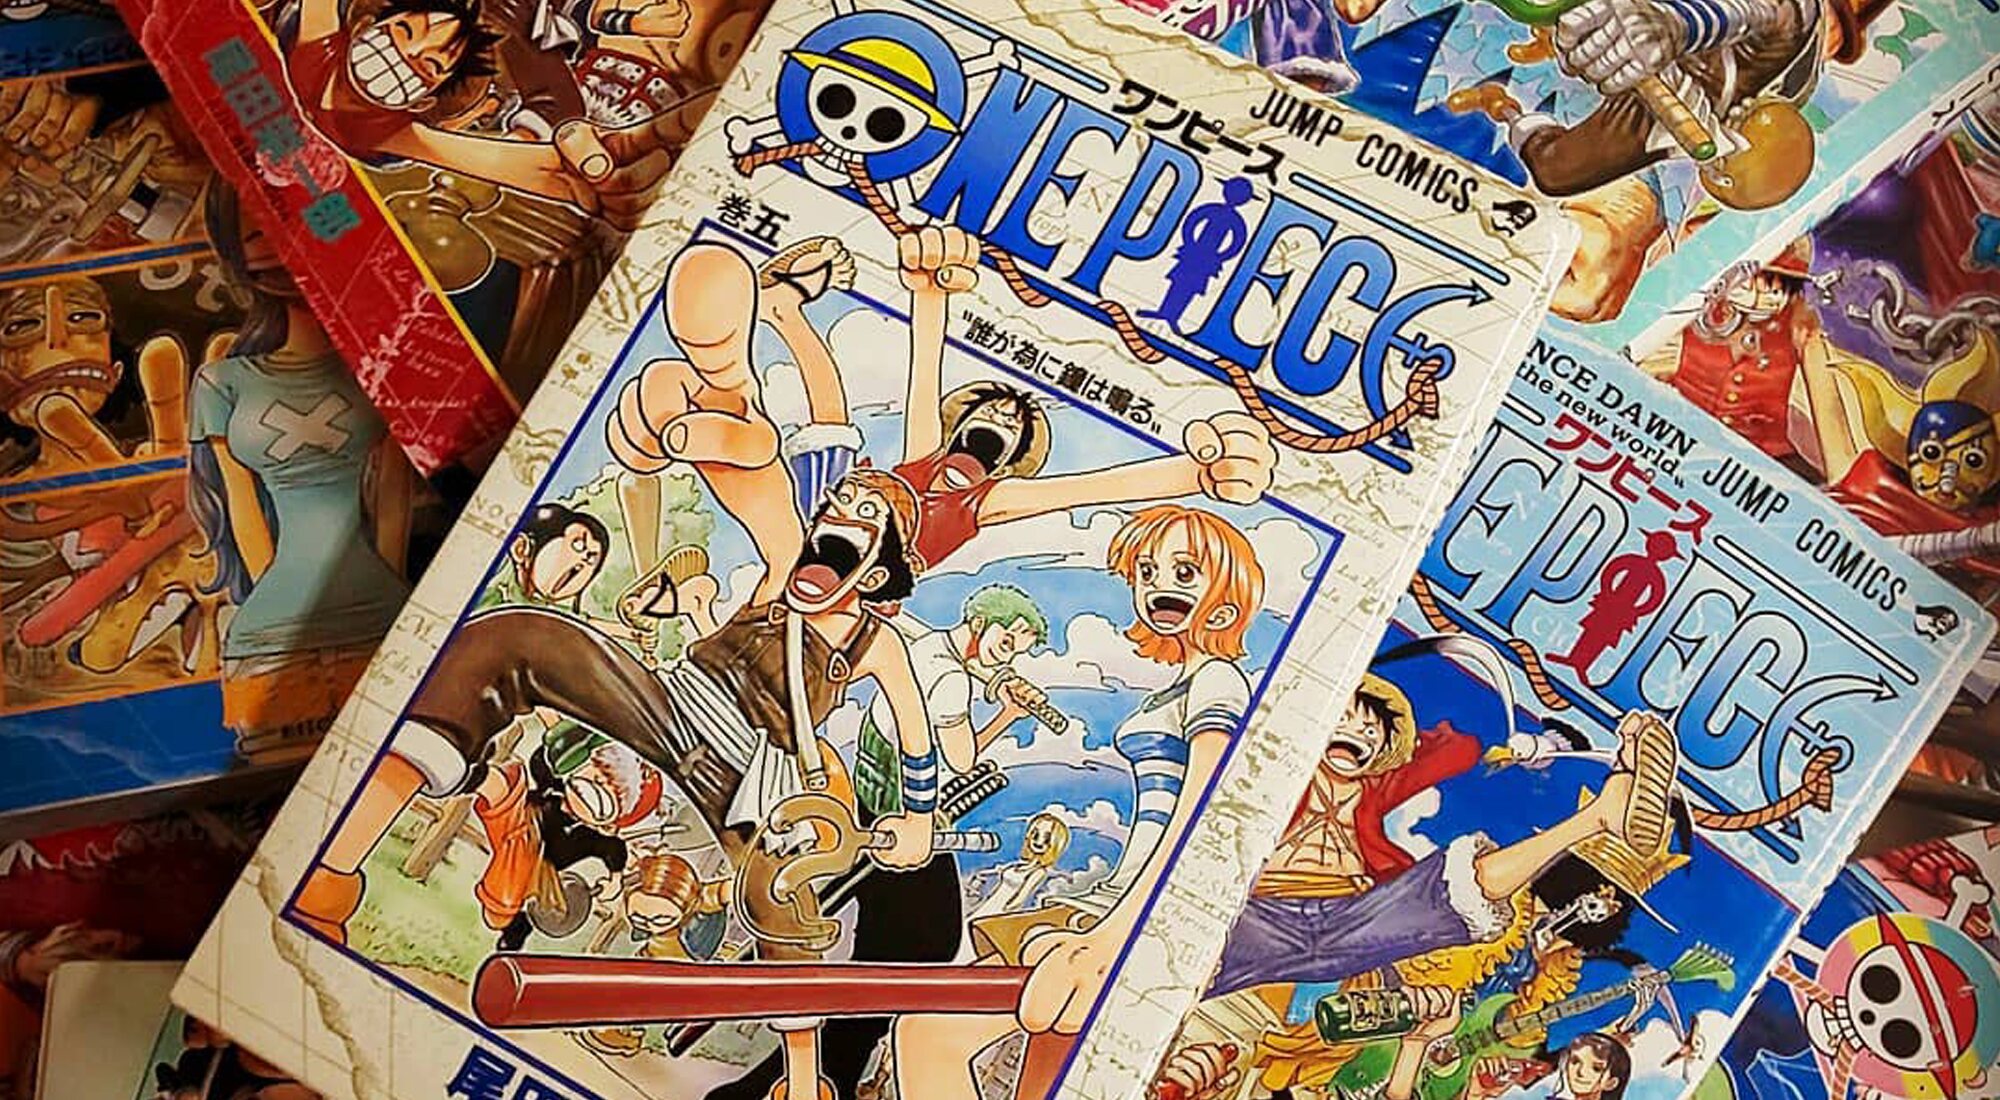 One Piece, temporada 2: fecha de estreno, reparto, tráiler, sinopsis y todo  lo que sabemos de la serie de Netflix basada en el manga de Eiichiro Oda